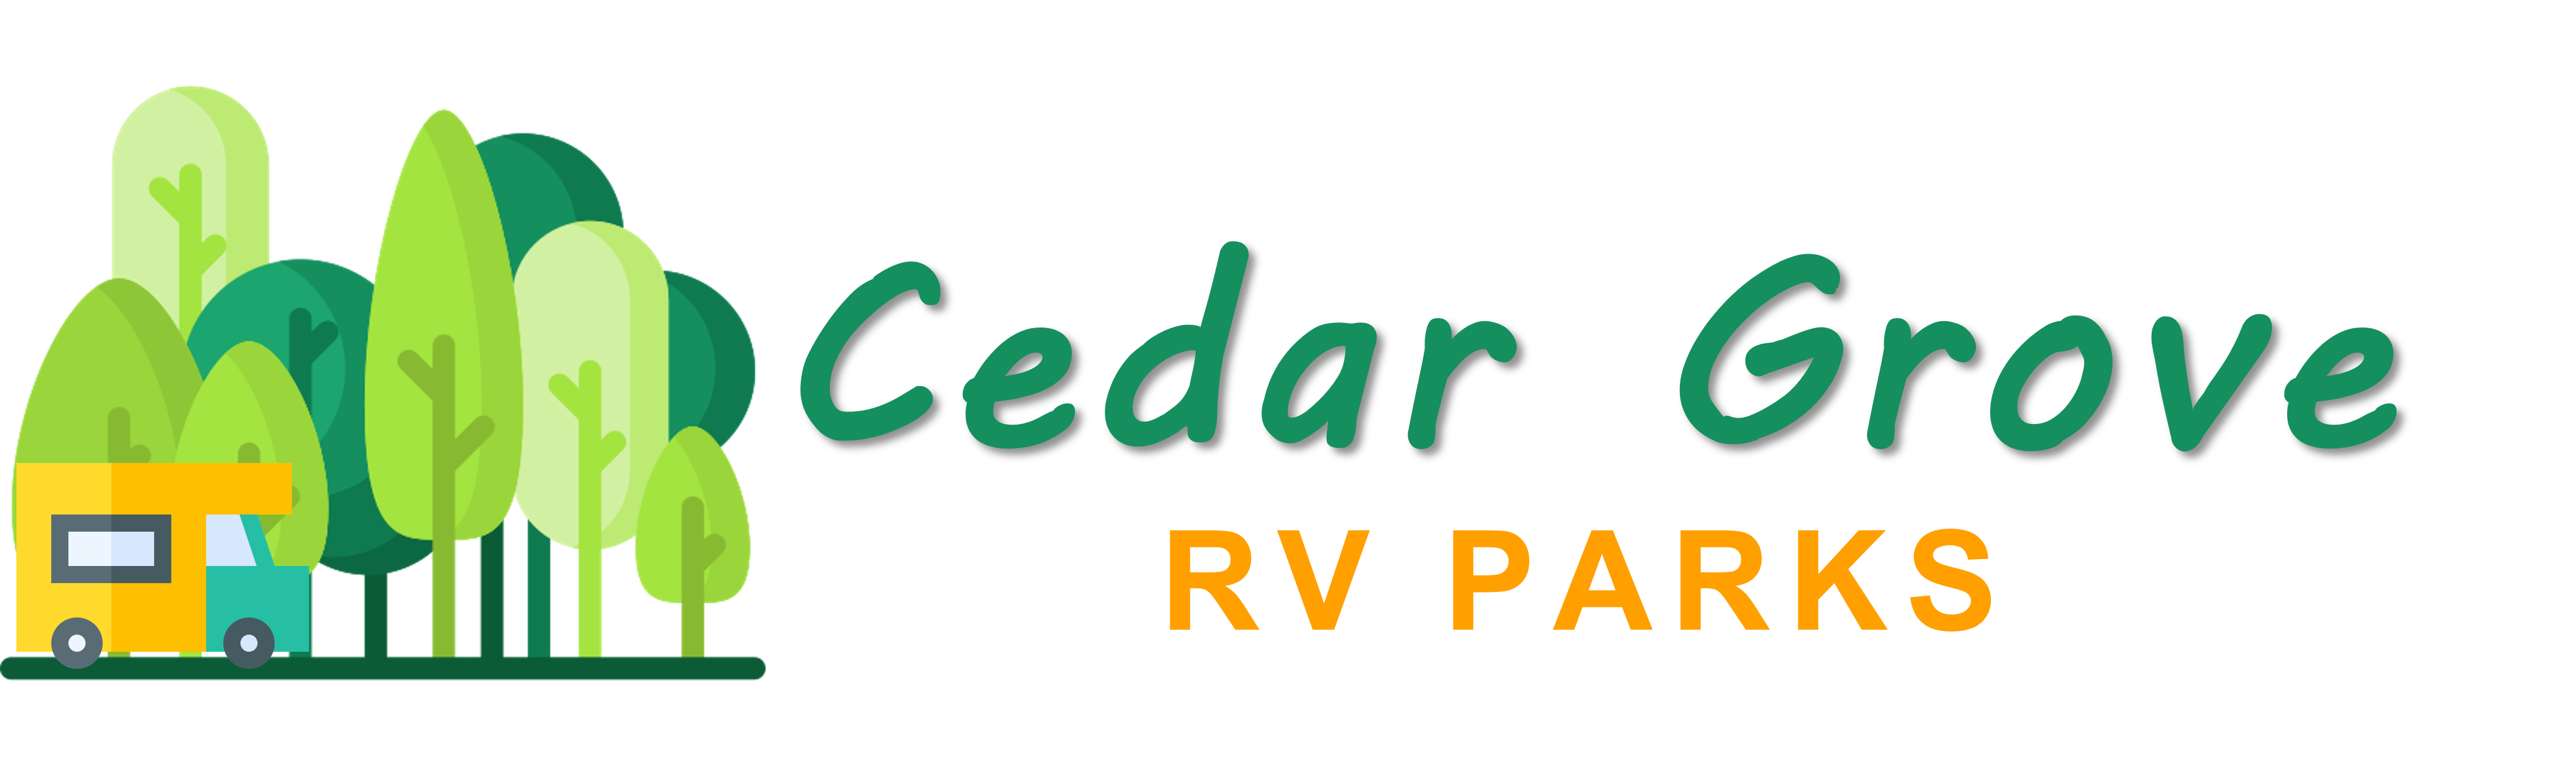 Cedar Grove RV Parks - UTILITIES INCLUDED